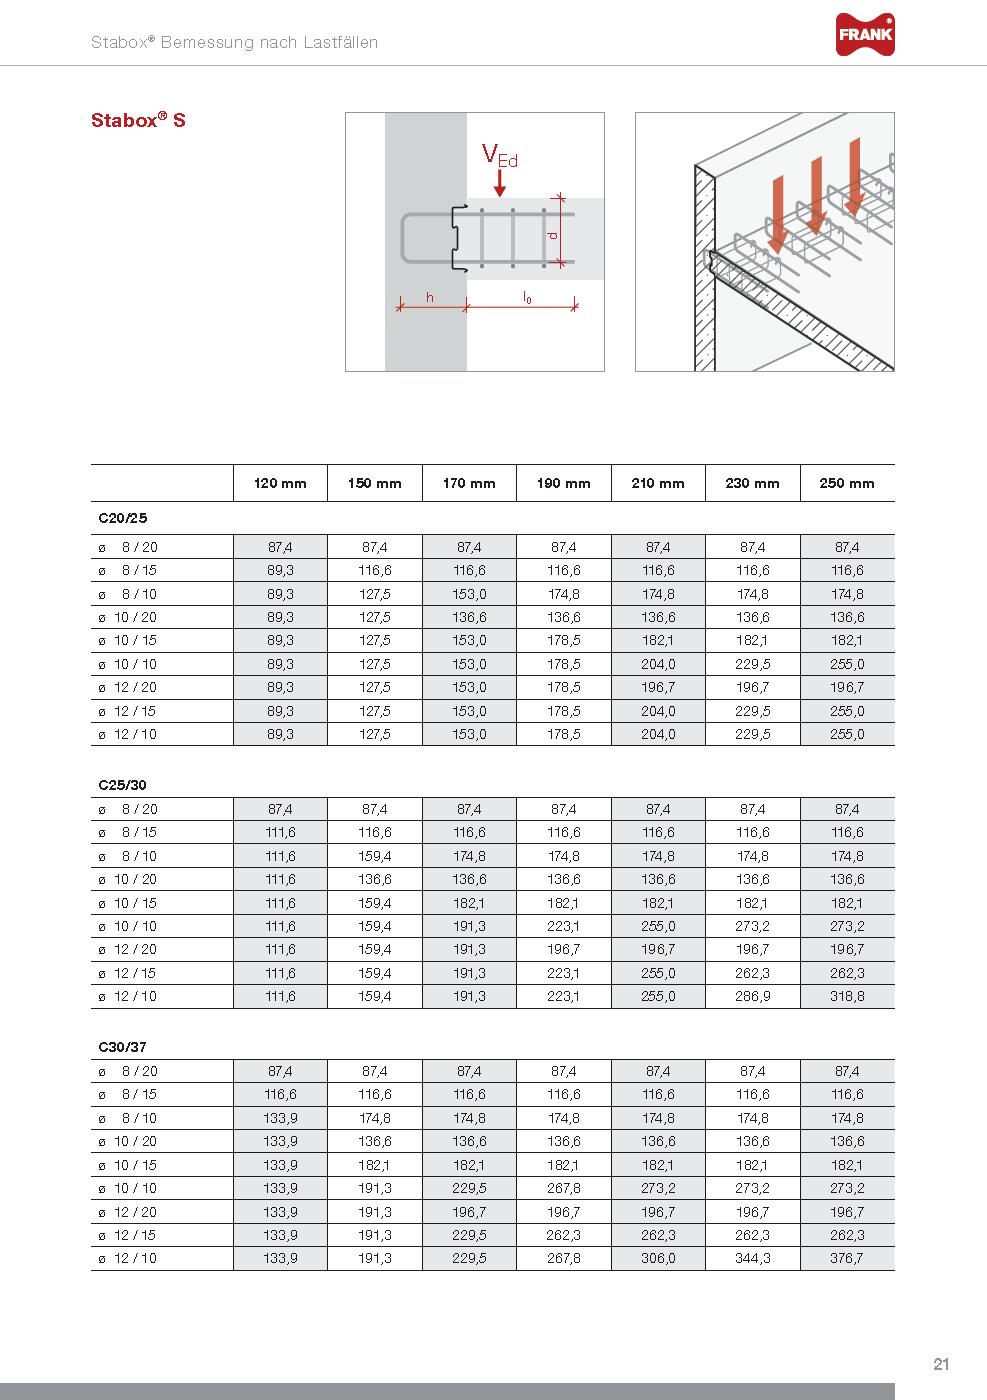 Stabox - Návrhové tabulky pro různé případy zatížení Standardní typ, úložné pouzdro standardního tvaru, typ B - se třmeny například pro připojení stěna/strop se smykovou výztuží v desce Případ c